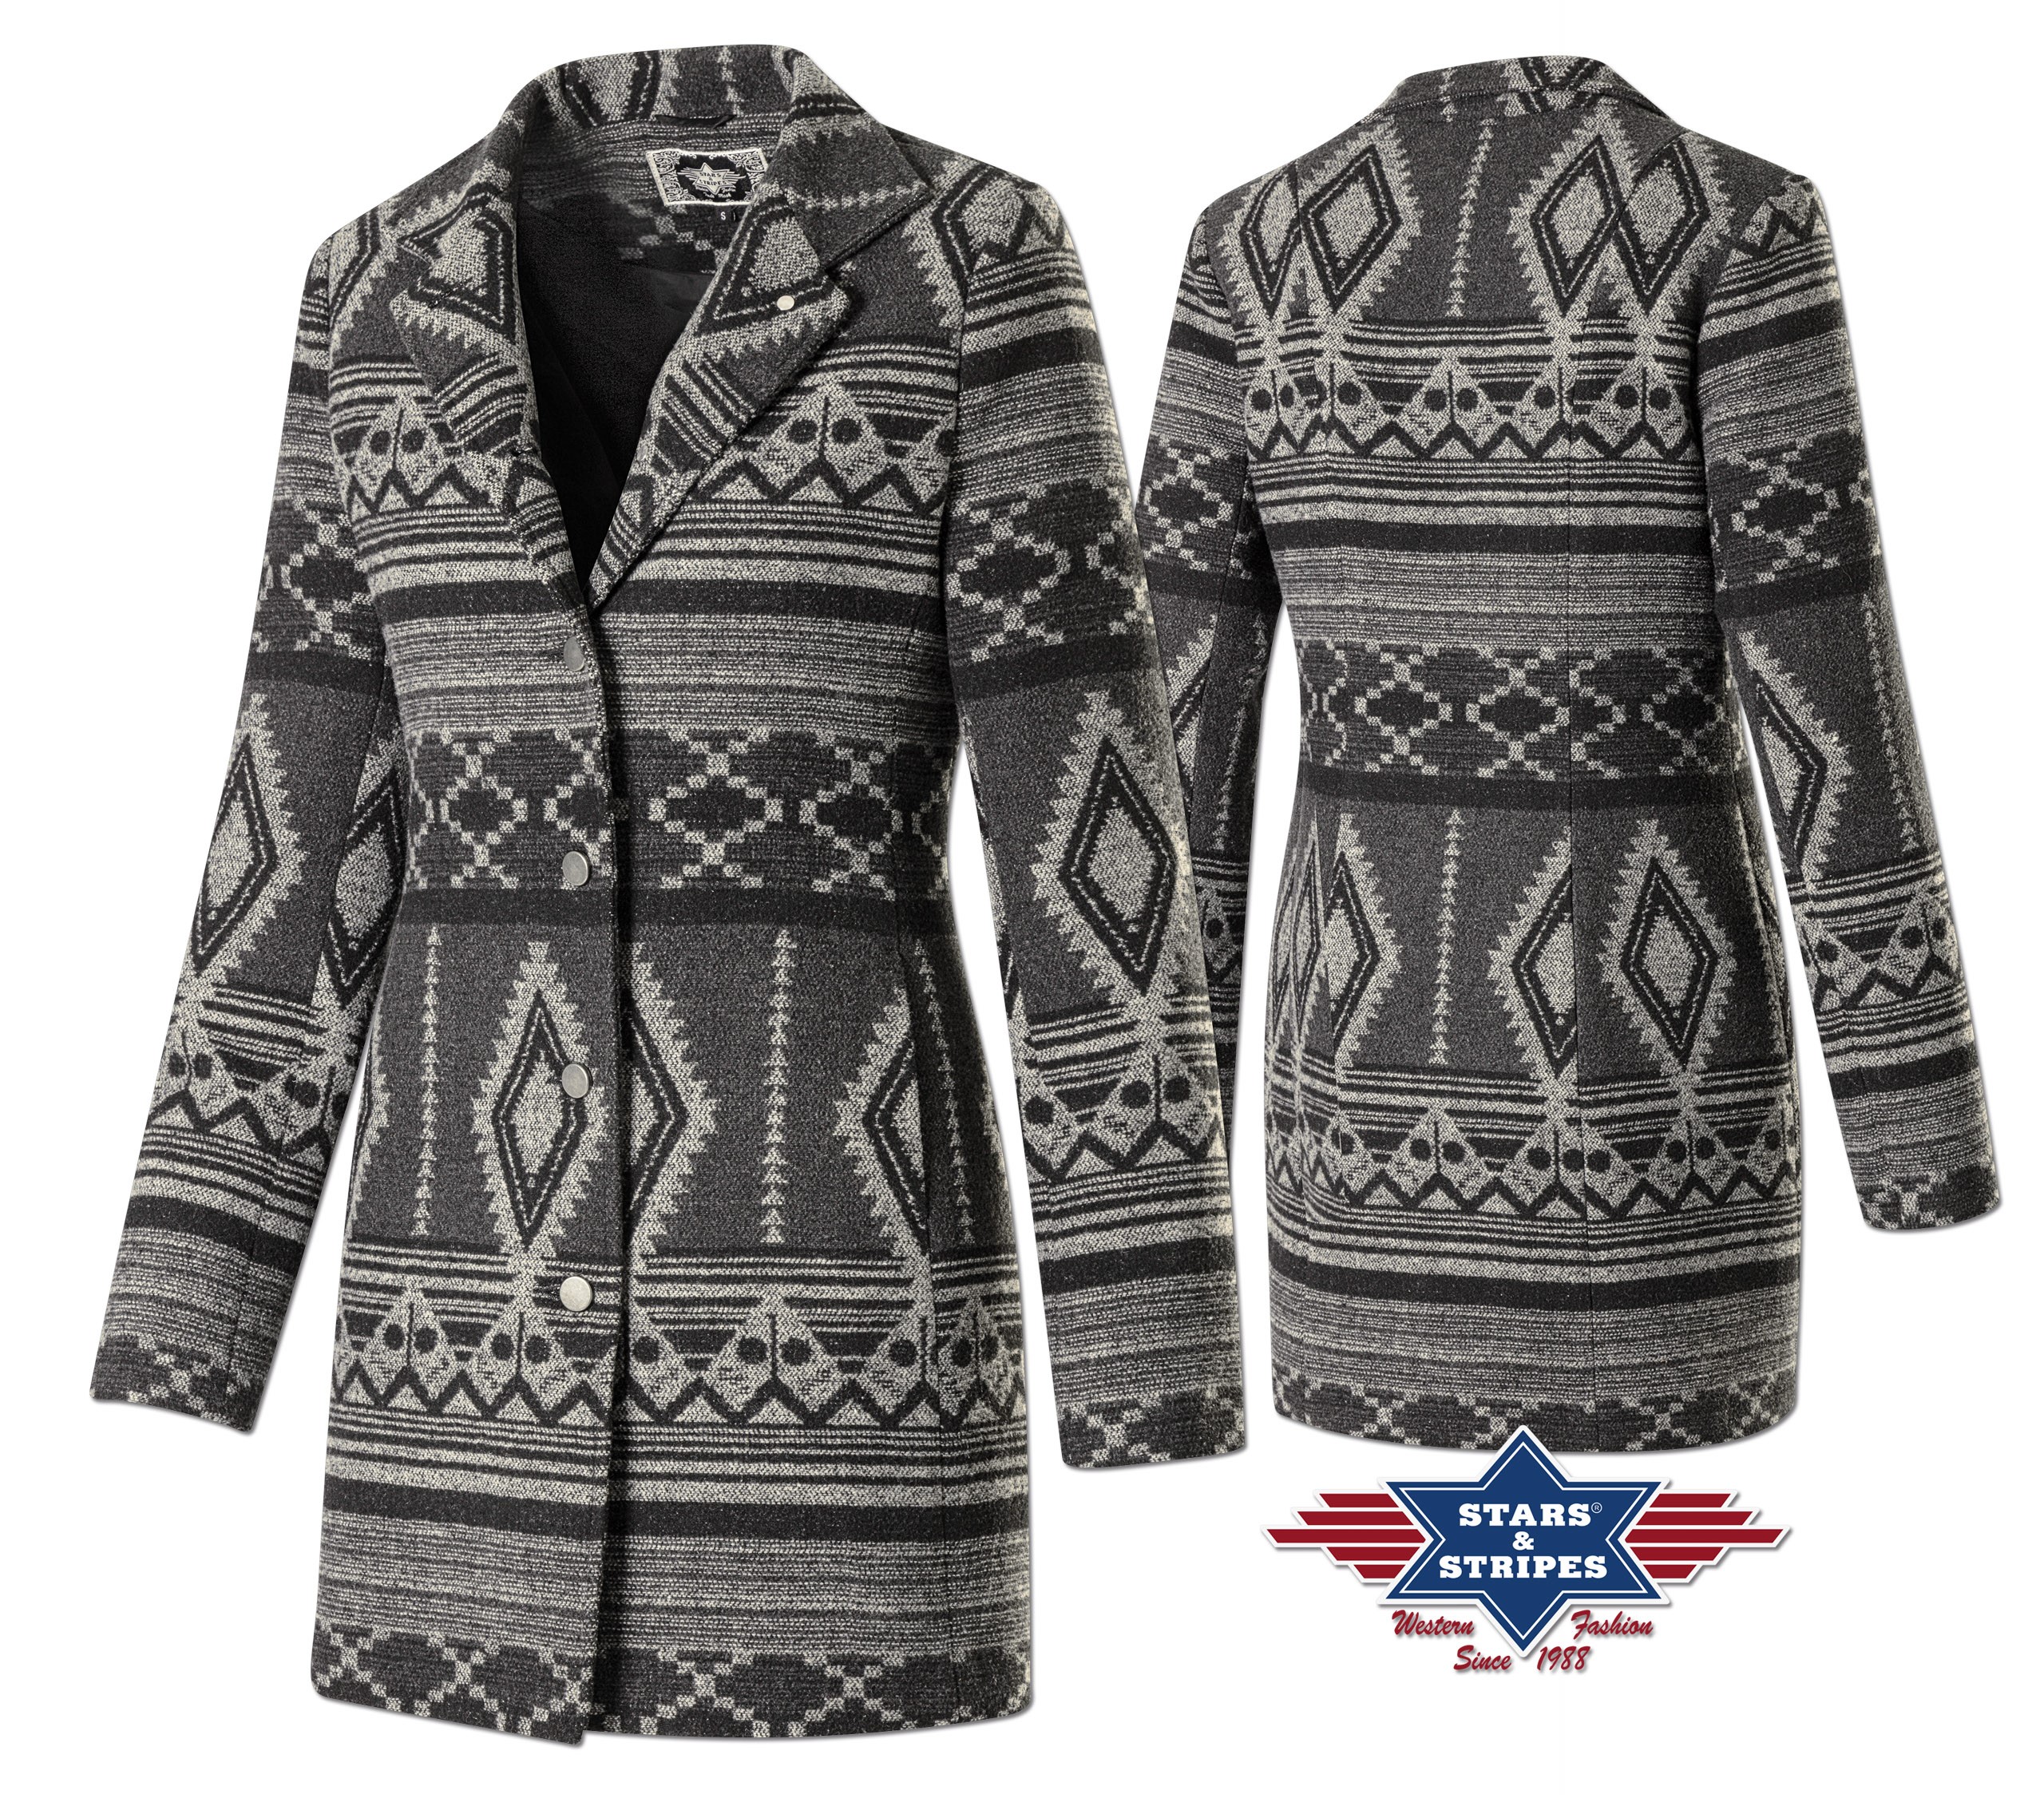 Ladies' coat ONITA, Aztec design